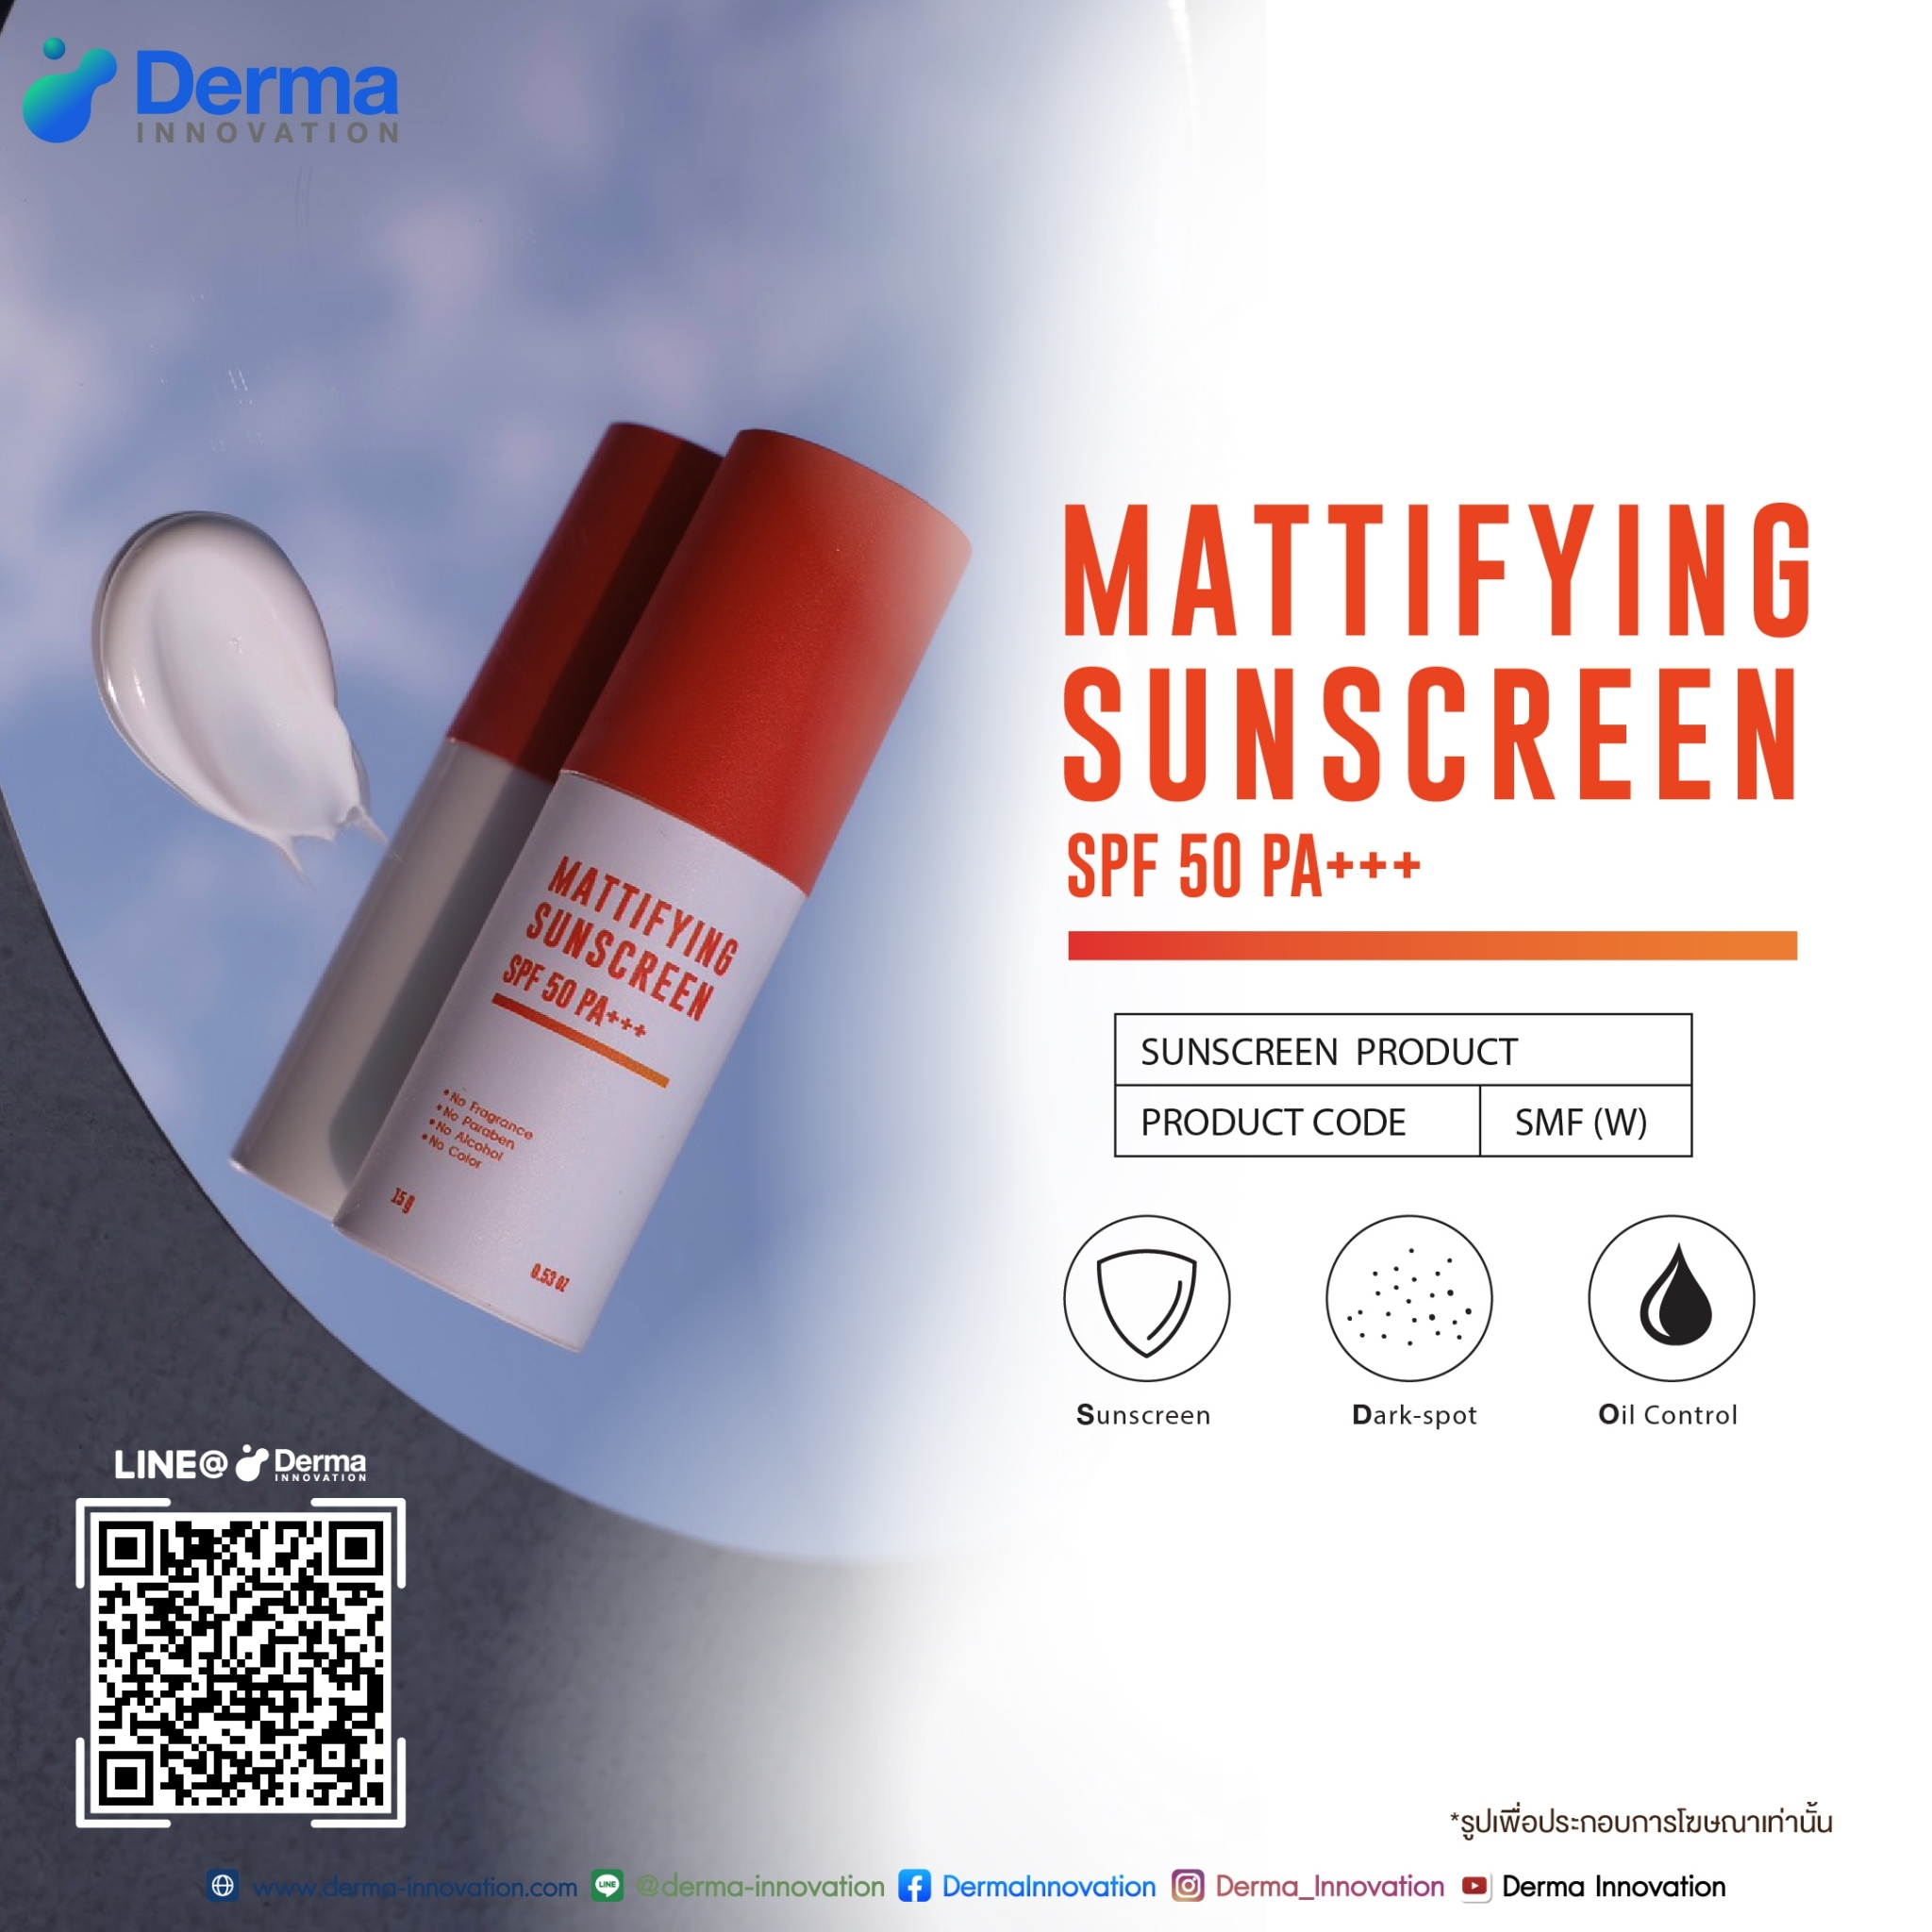 Mattifying Sunscreen SPF 50 PA +++